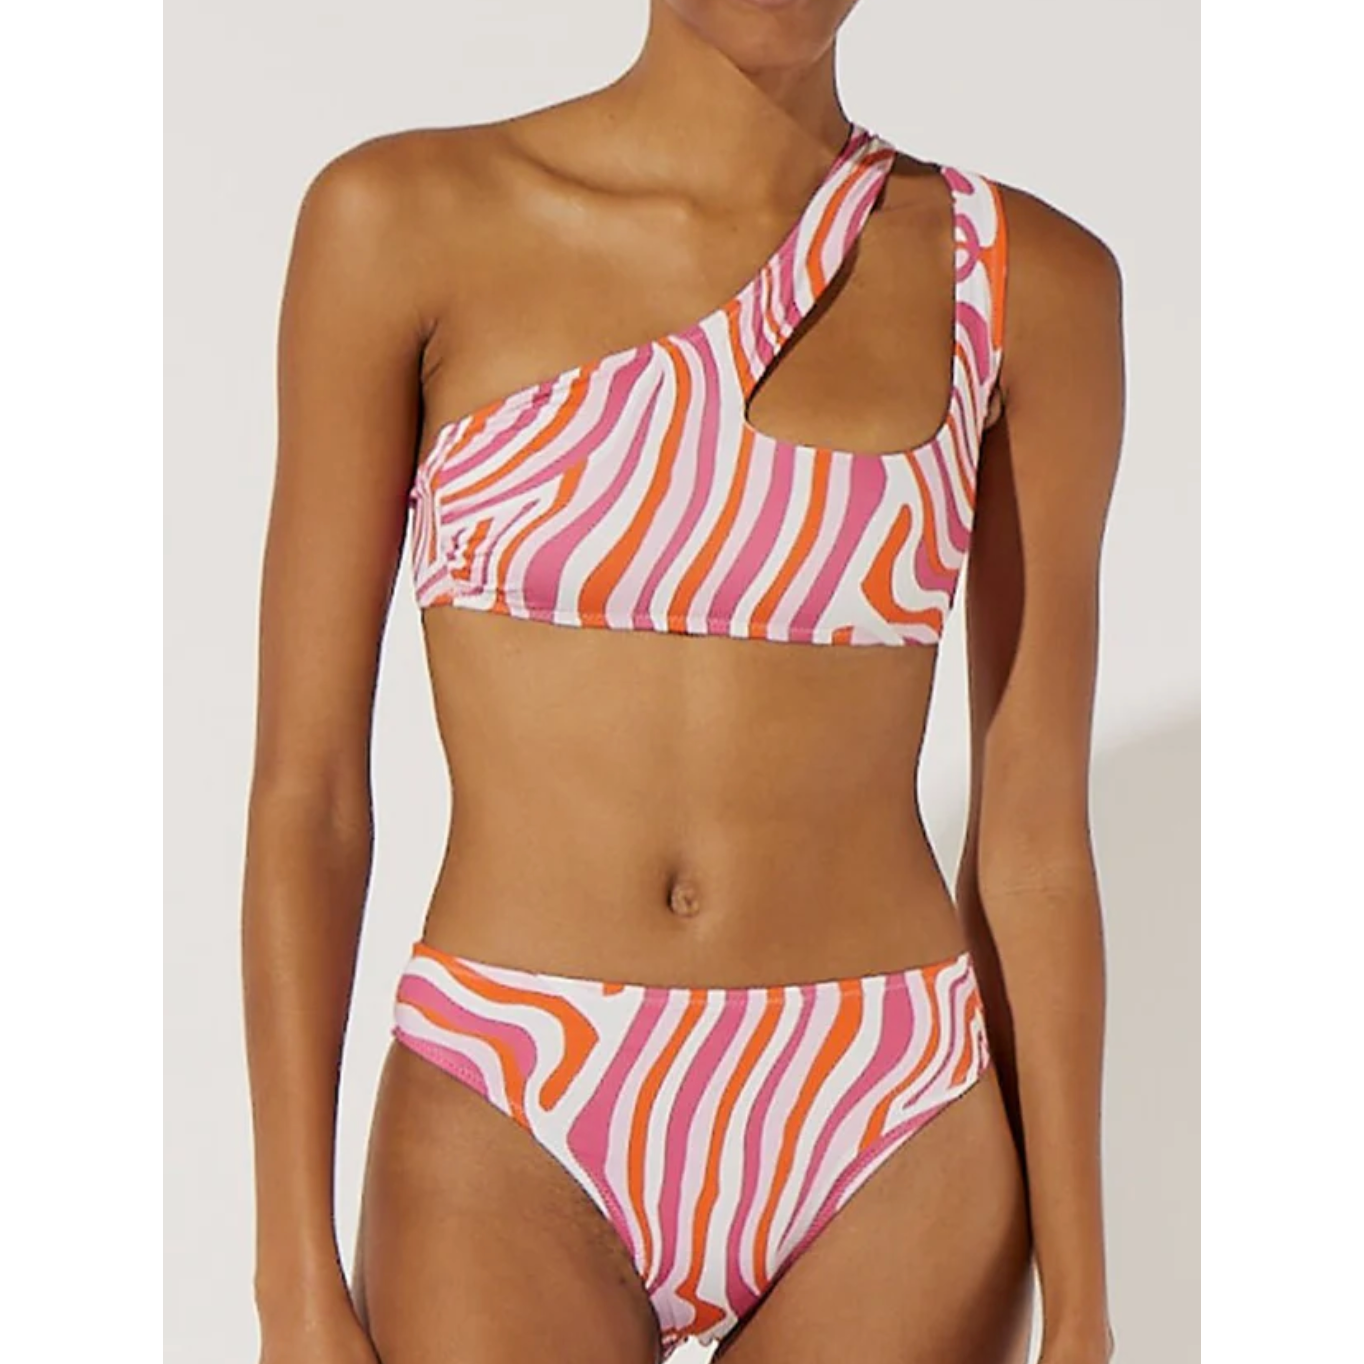 The Brody Top - Bikini - Solid & Striped